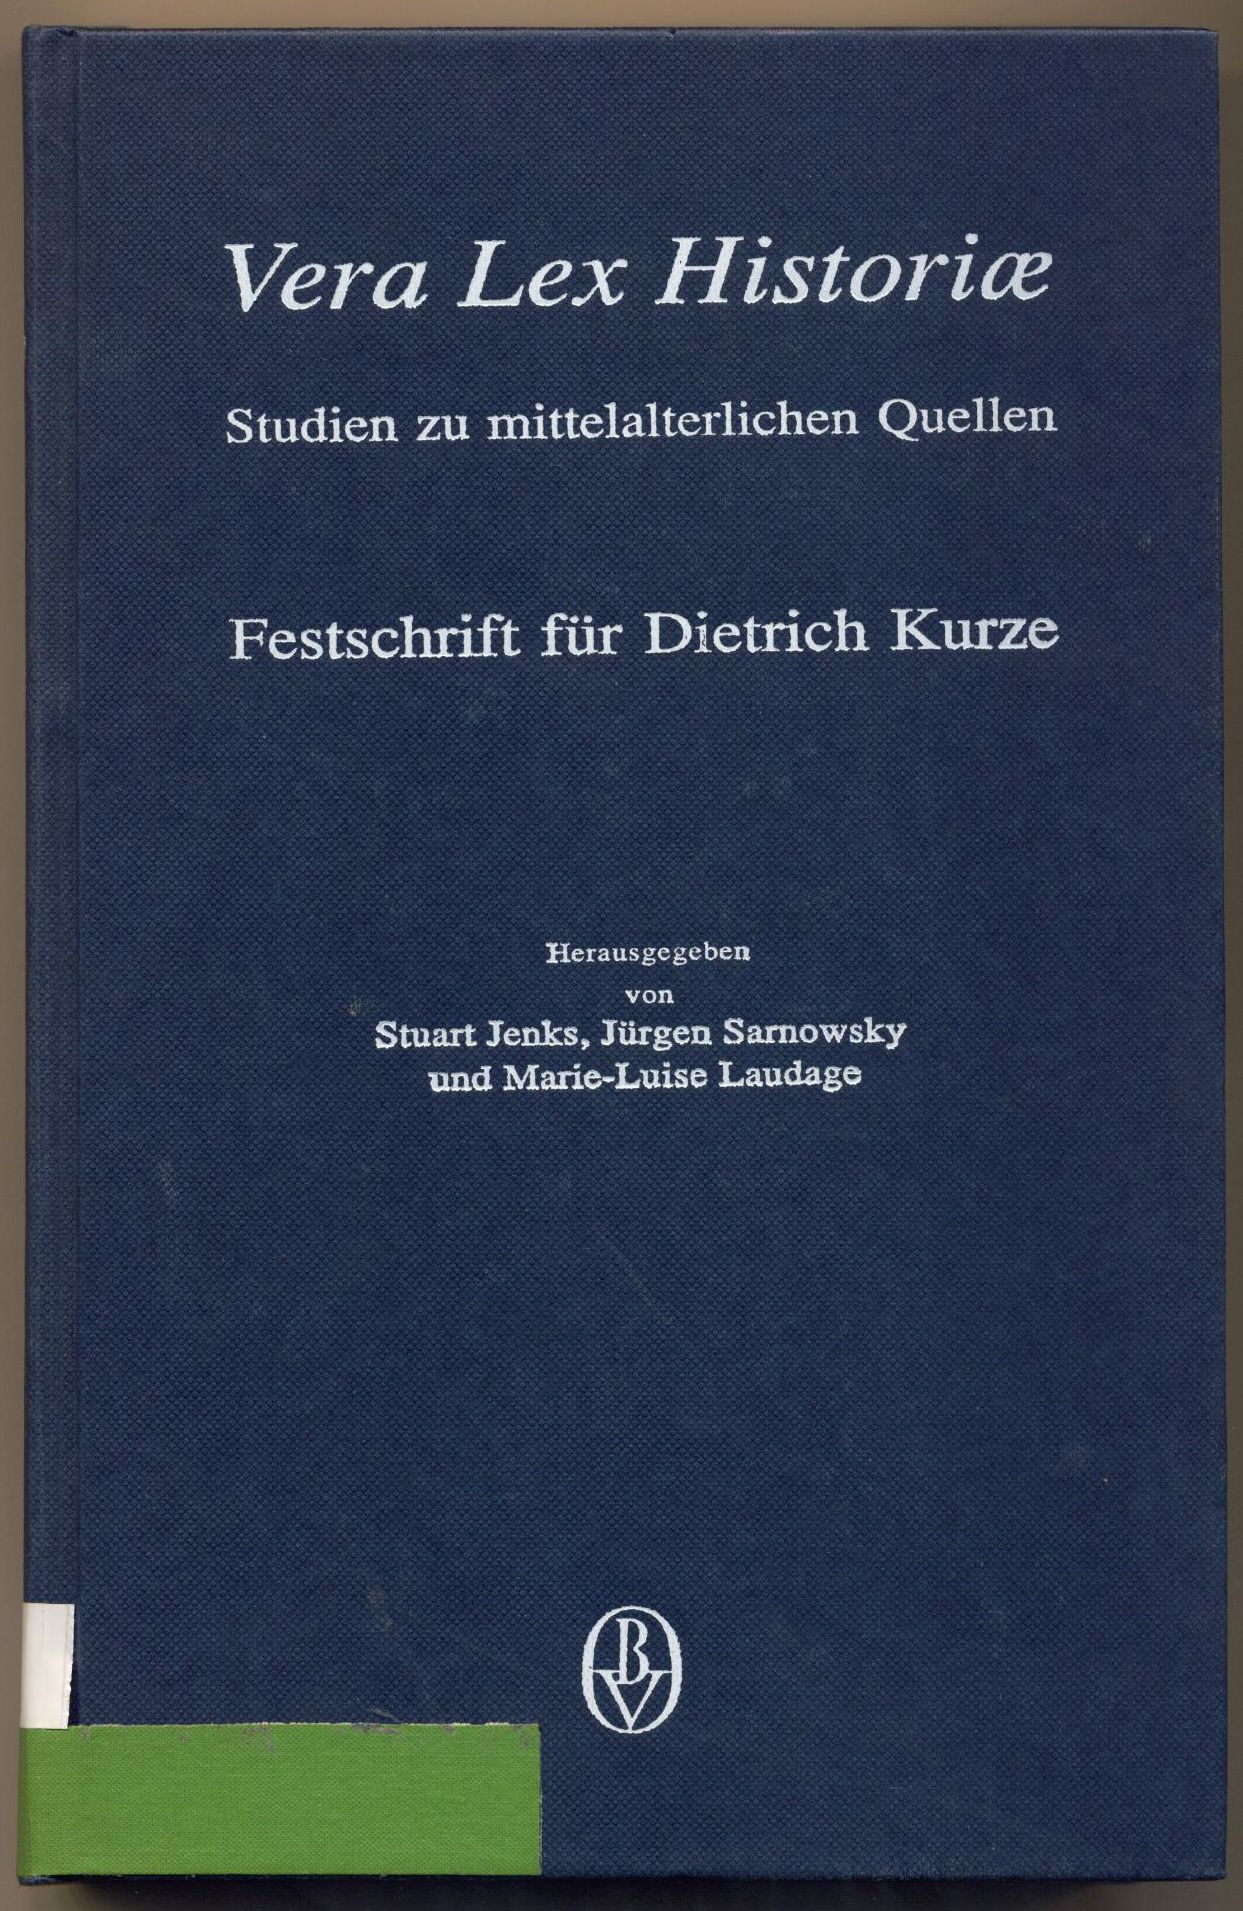 Vera Lex Historiae. Studien zu mittelalterlichen Quellen. Festschrift für Dietrich Kurze zu seinem 65. Geburtstag am 1. Januar 1993. - Jenks, Stuart.